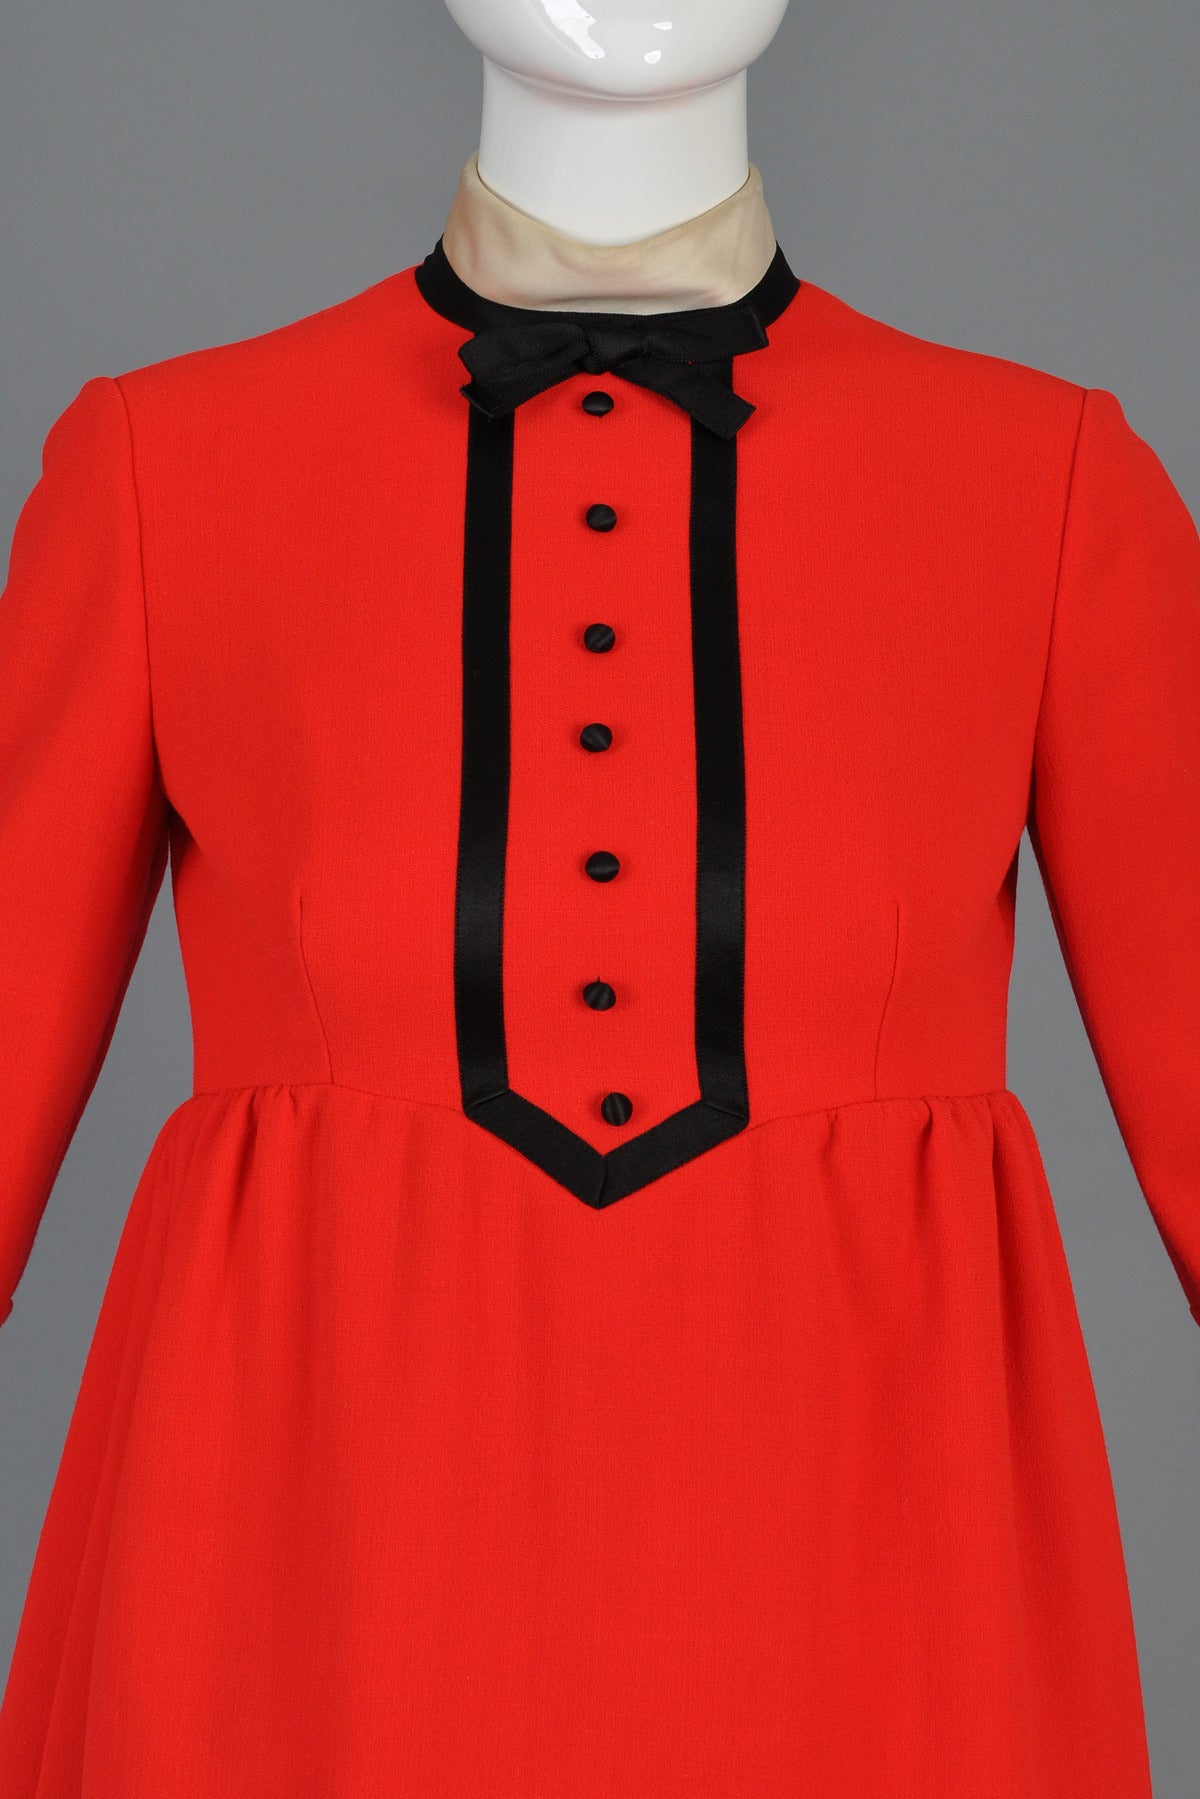 Women's Geoffrey Beene Red, Black + White Tuxedo Babydoll Dress